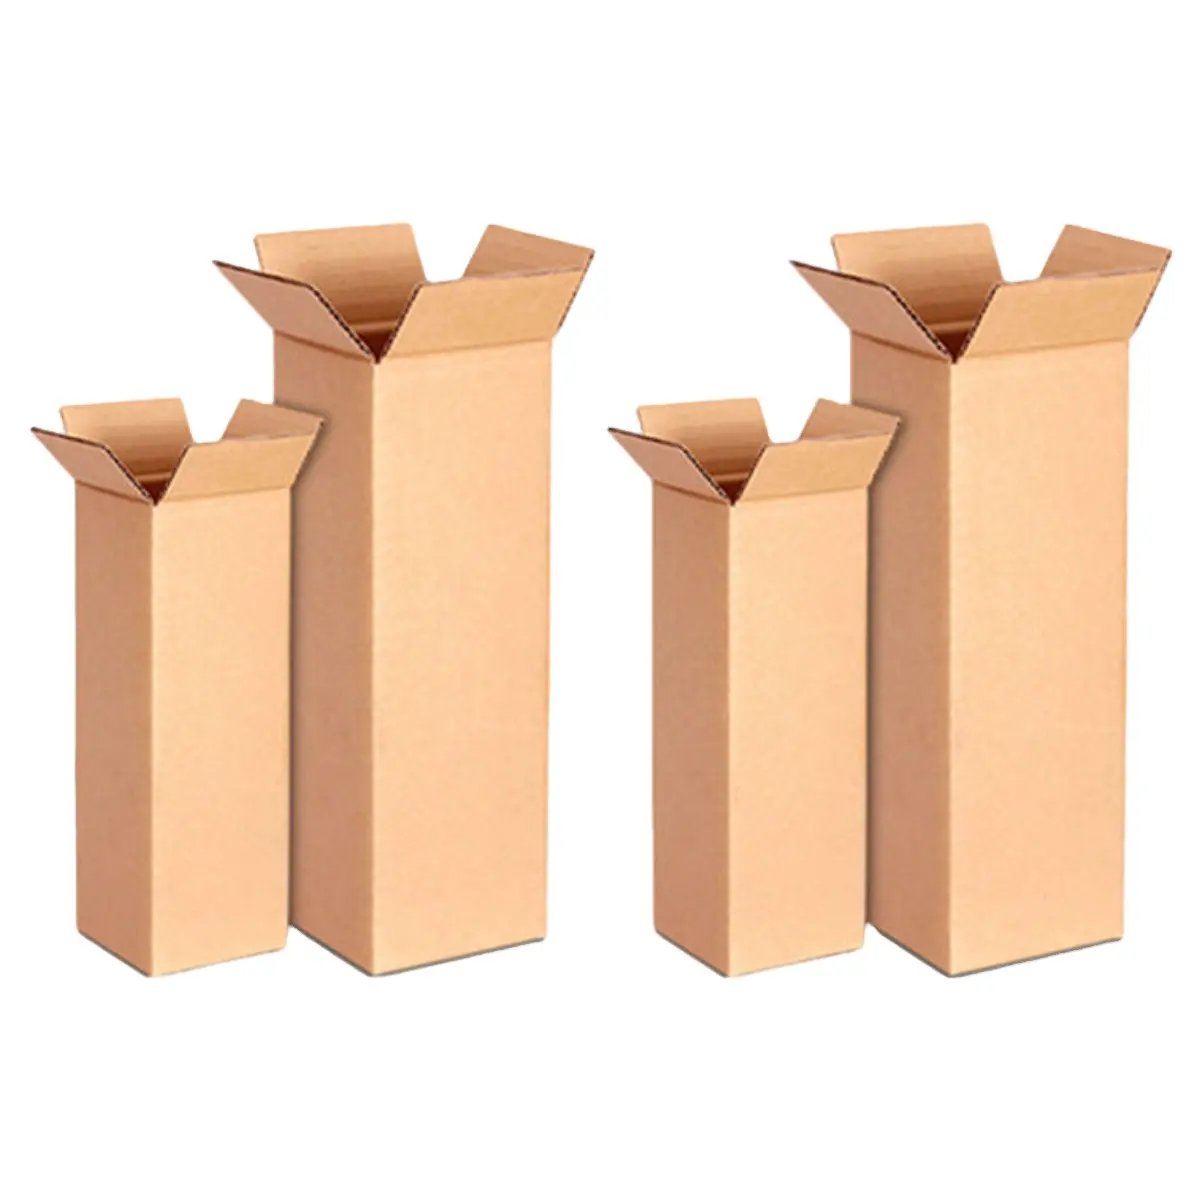 Sıcak satış fabrika özel oluklu mukavva karton nakliye kutusu ambalaj depolama için büyük kutuları hareketli